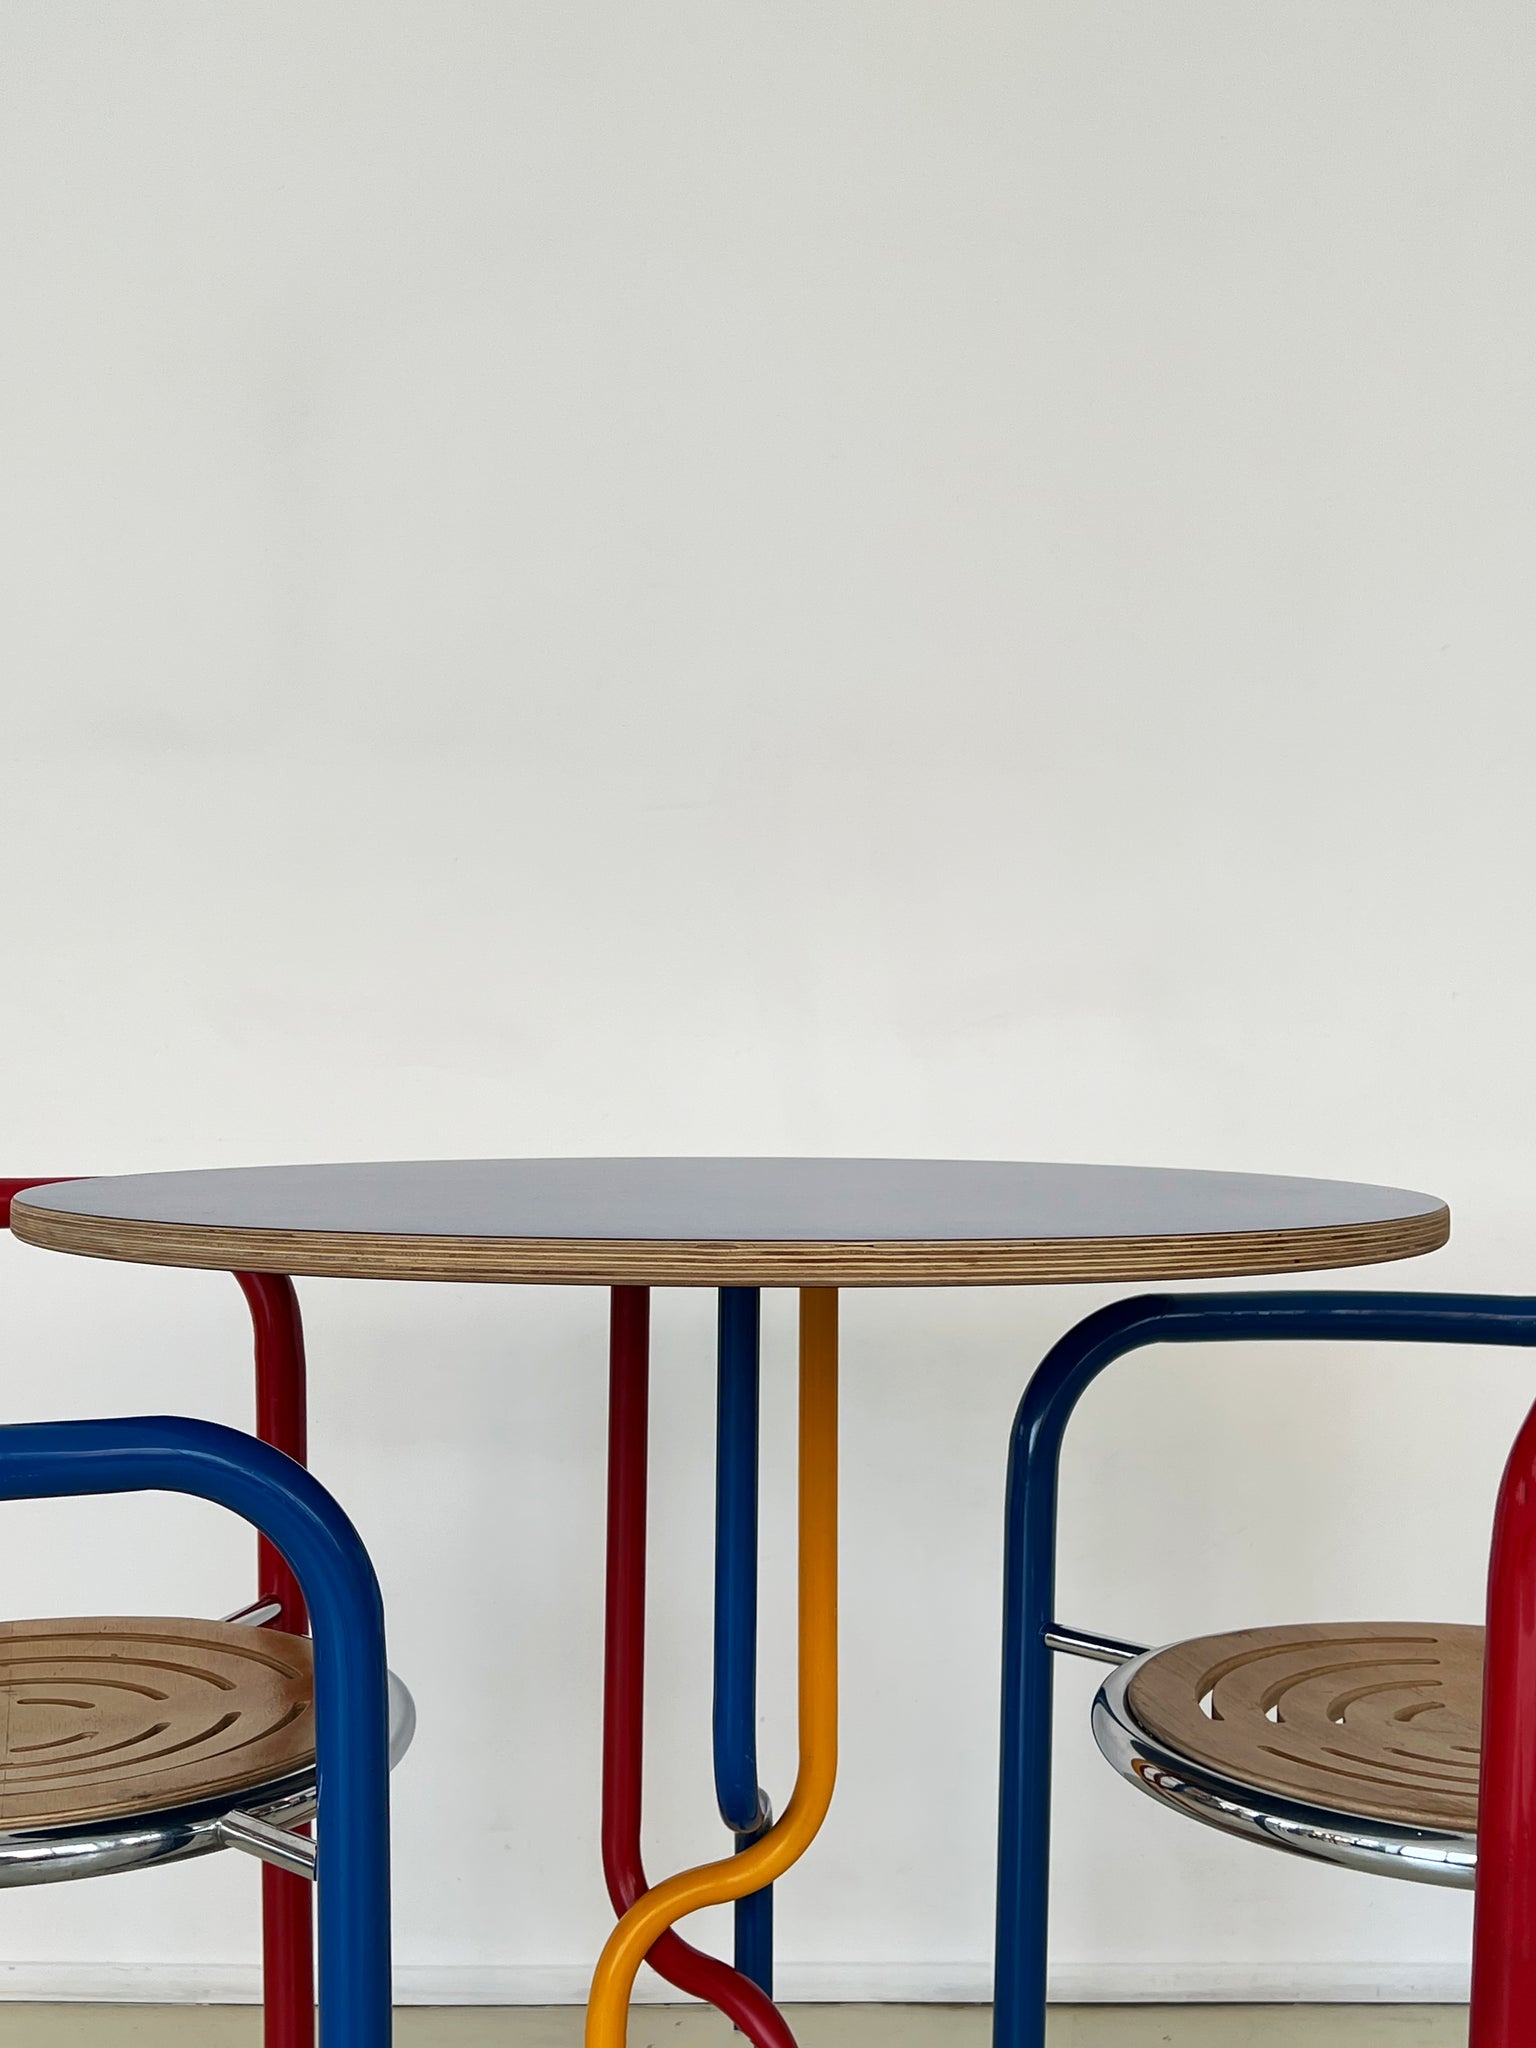 Vintage Modern Dining Table & Chairs by Rud Thygesen & Johnny Sørensen for Botium, Denmark